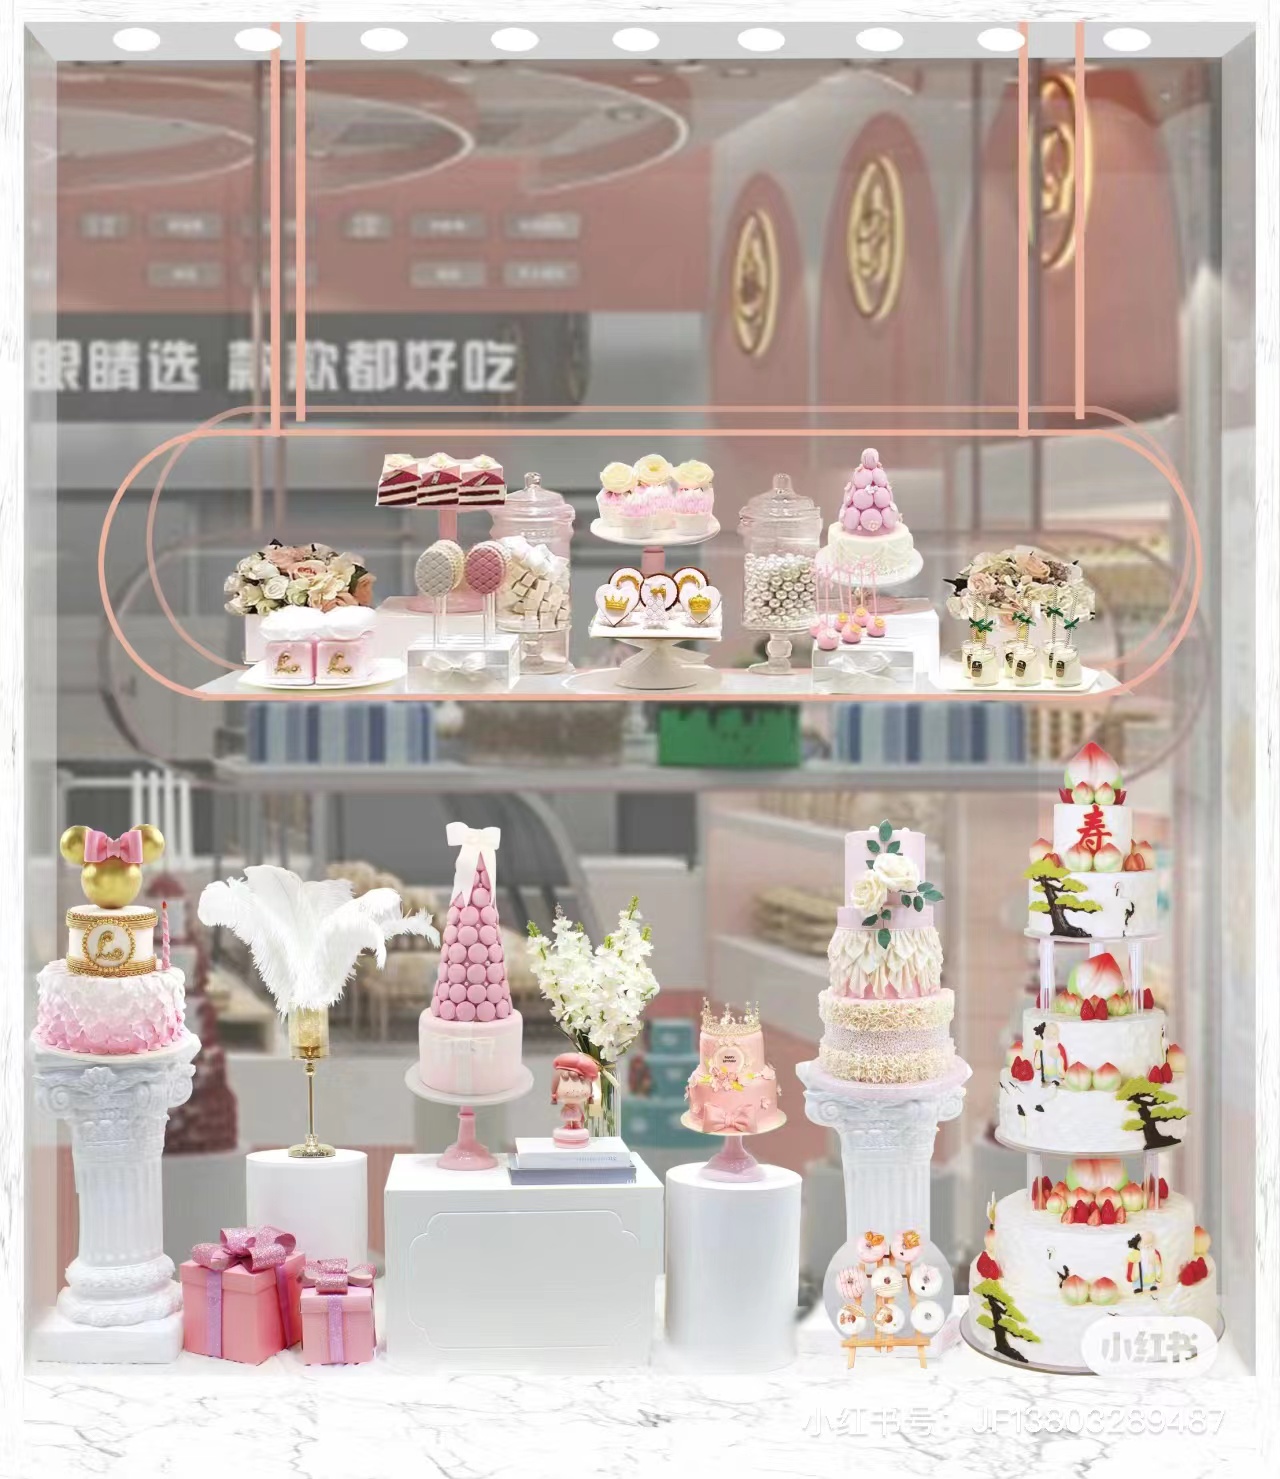 橱窗装饰蛋糕模型烘焙店流行新颖仿真生日蛋糕模型设计艺术橱窗